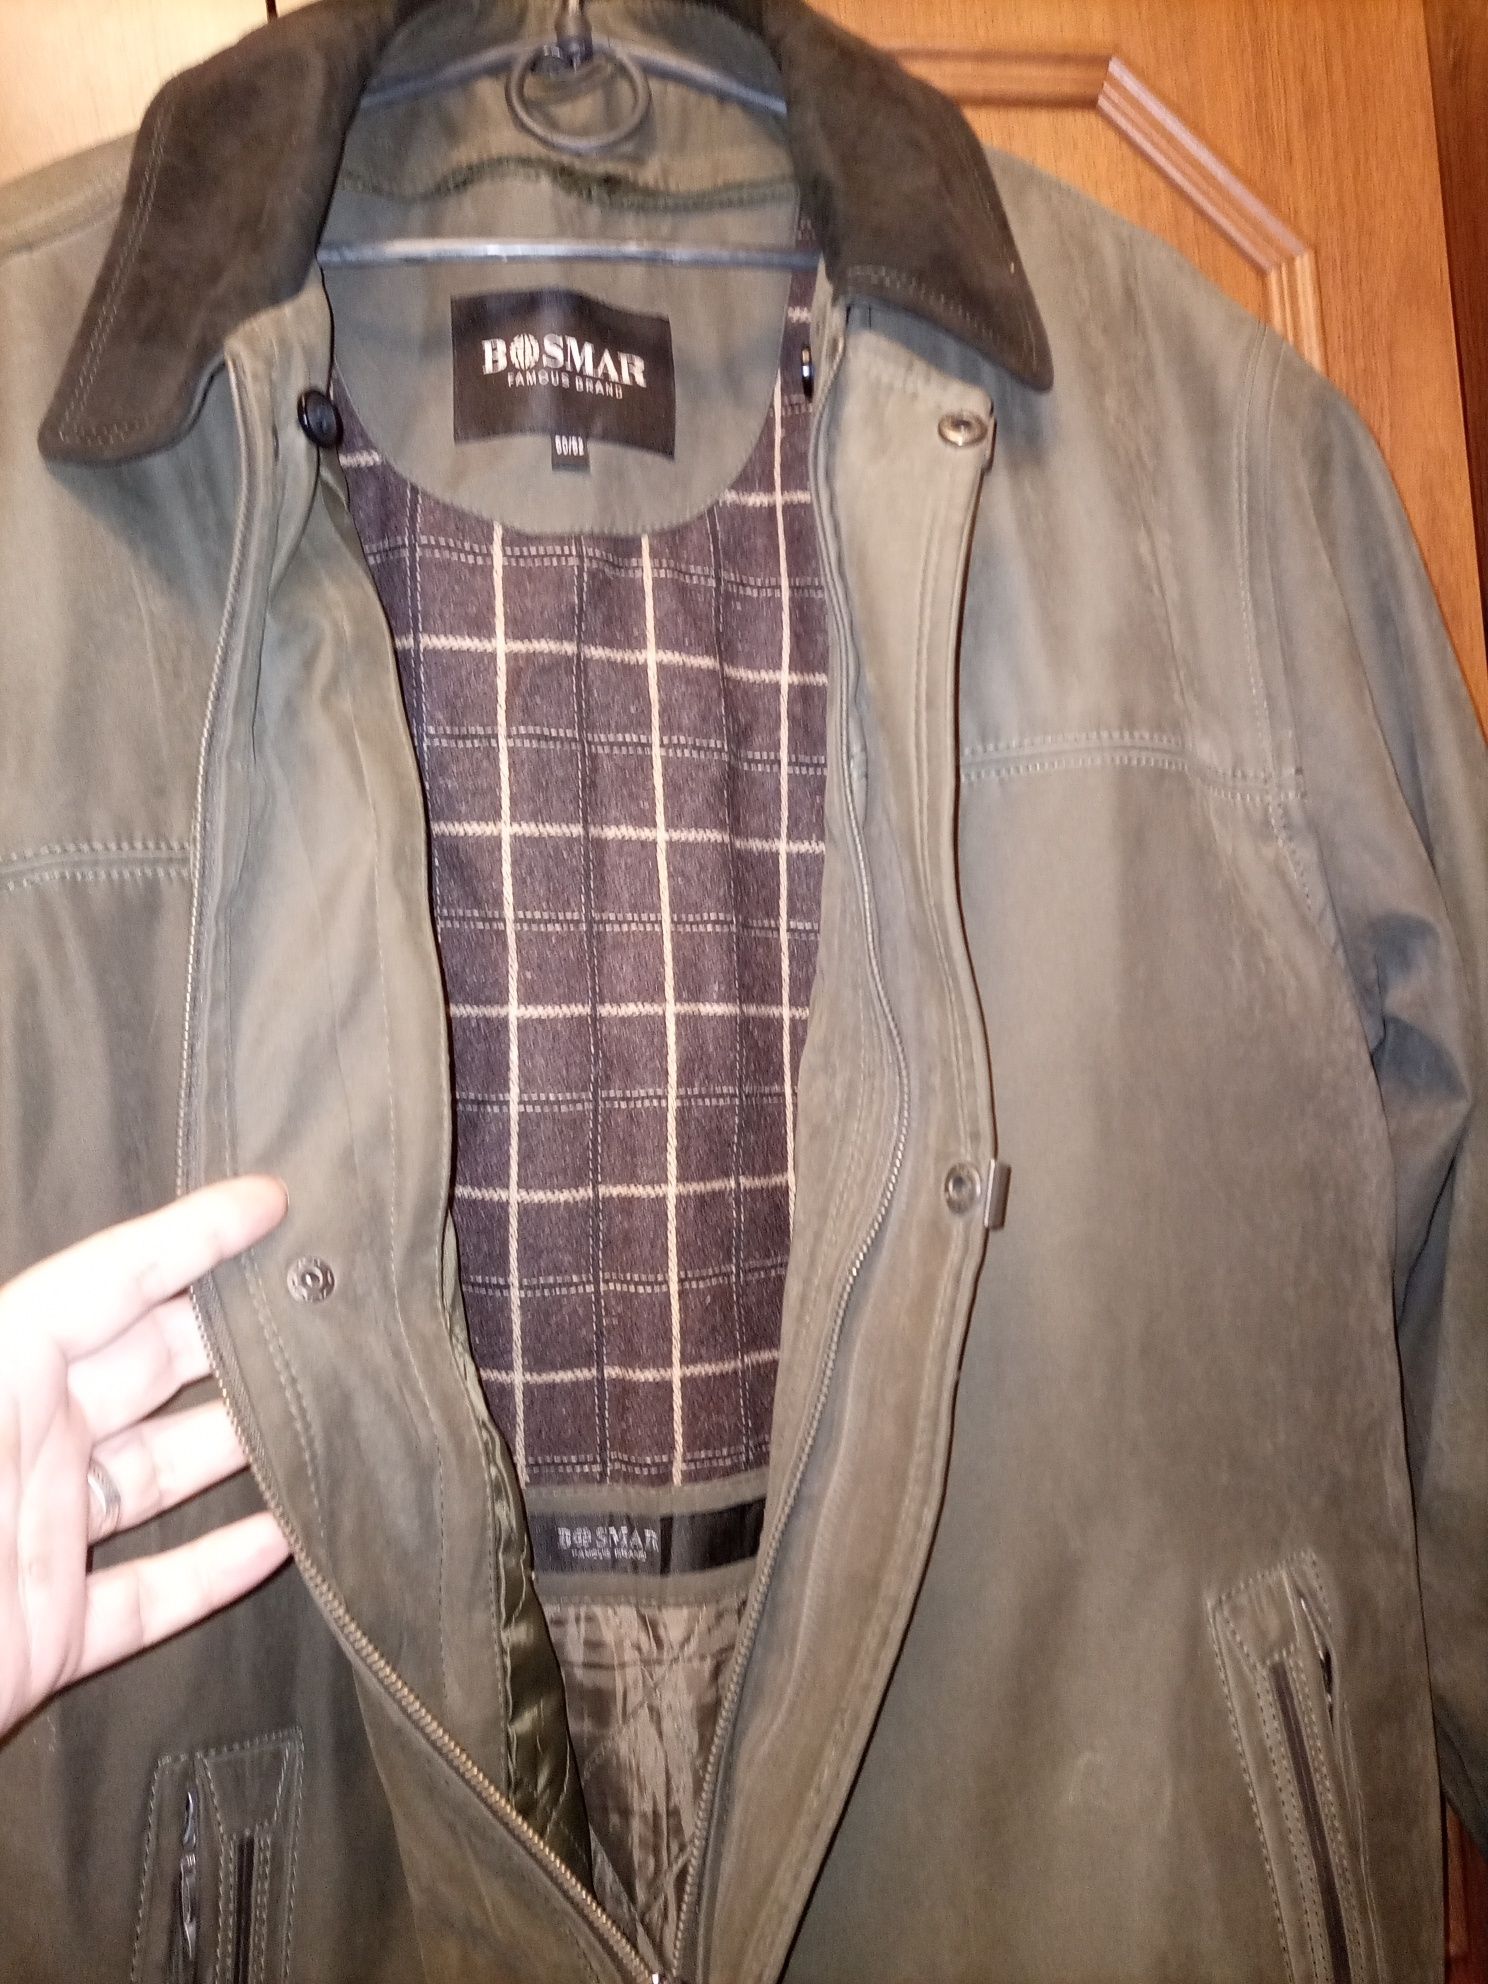 Куртка Bosmar теплая мужская на осень-зима 50-52 размер.